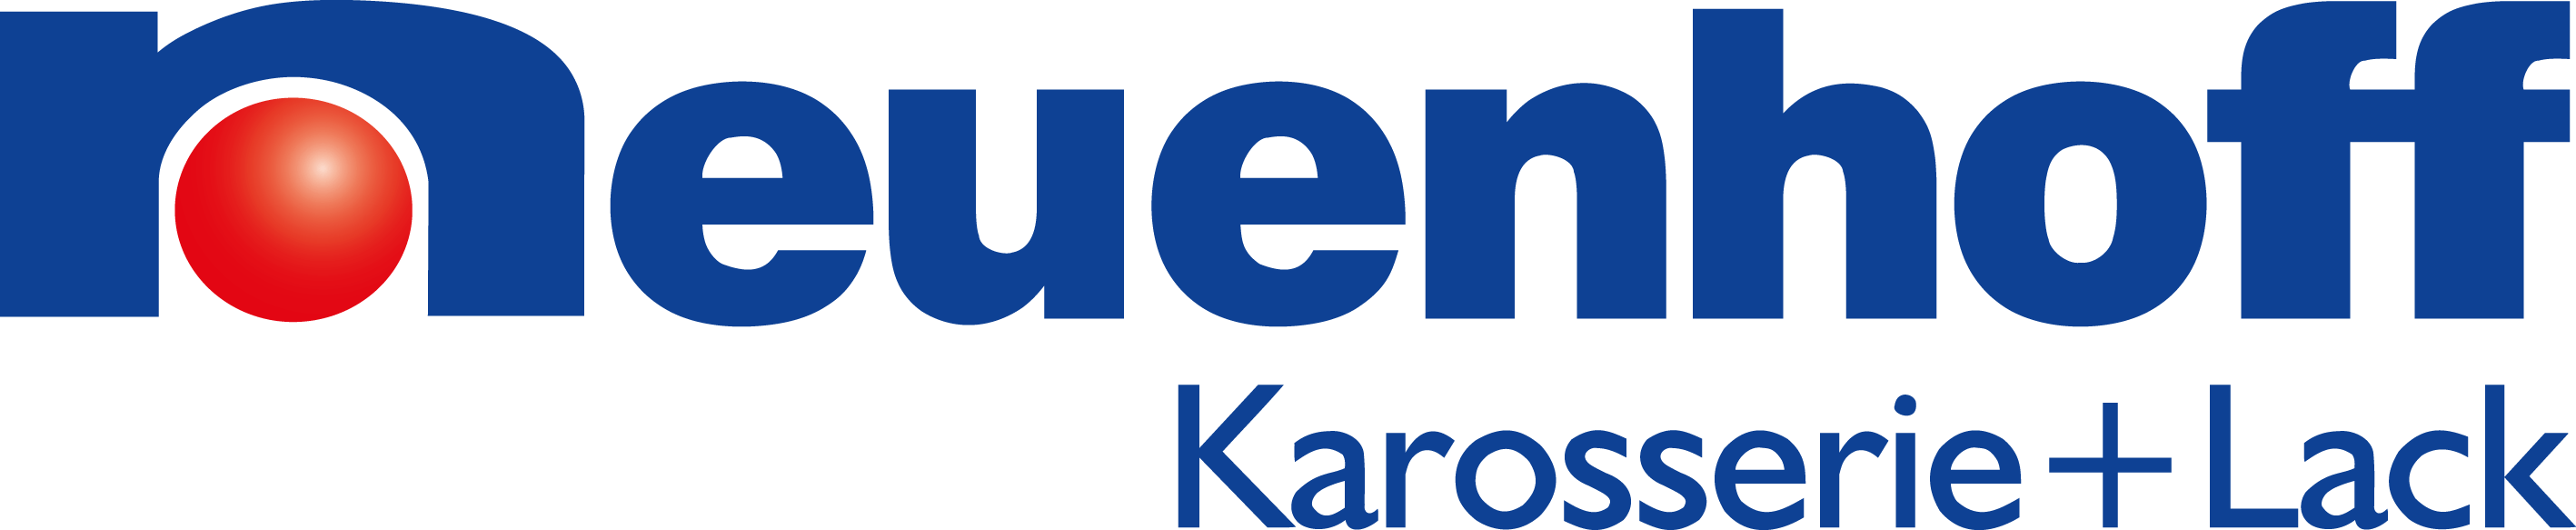 neuenhoff-logo